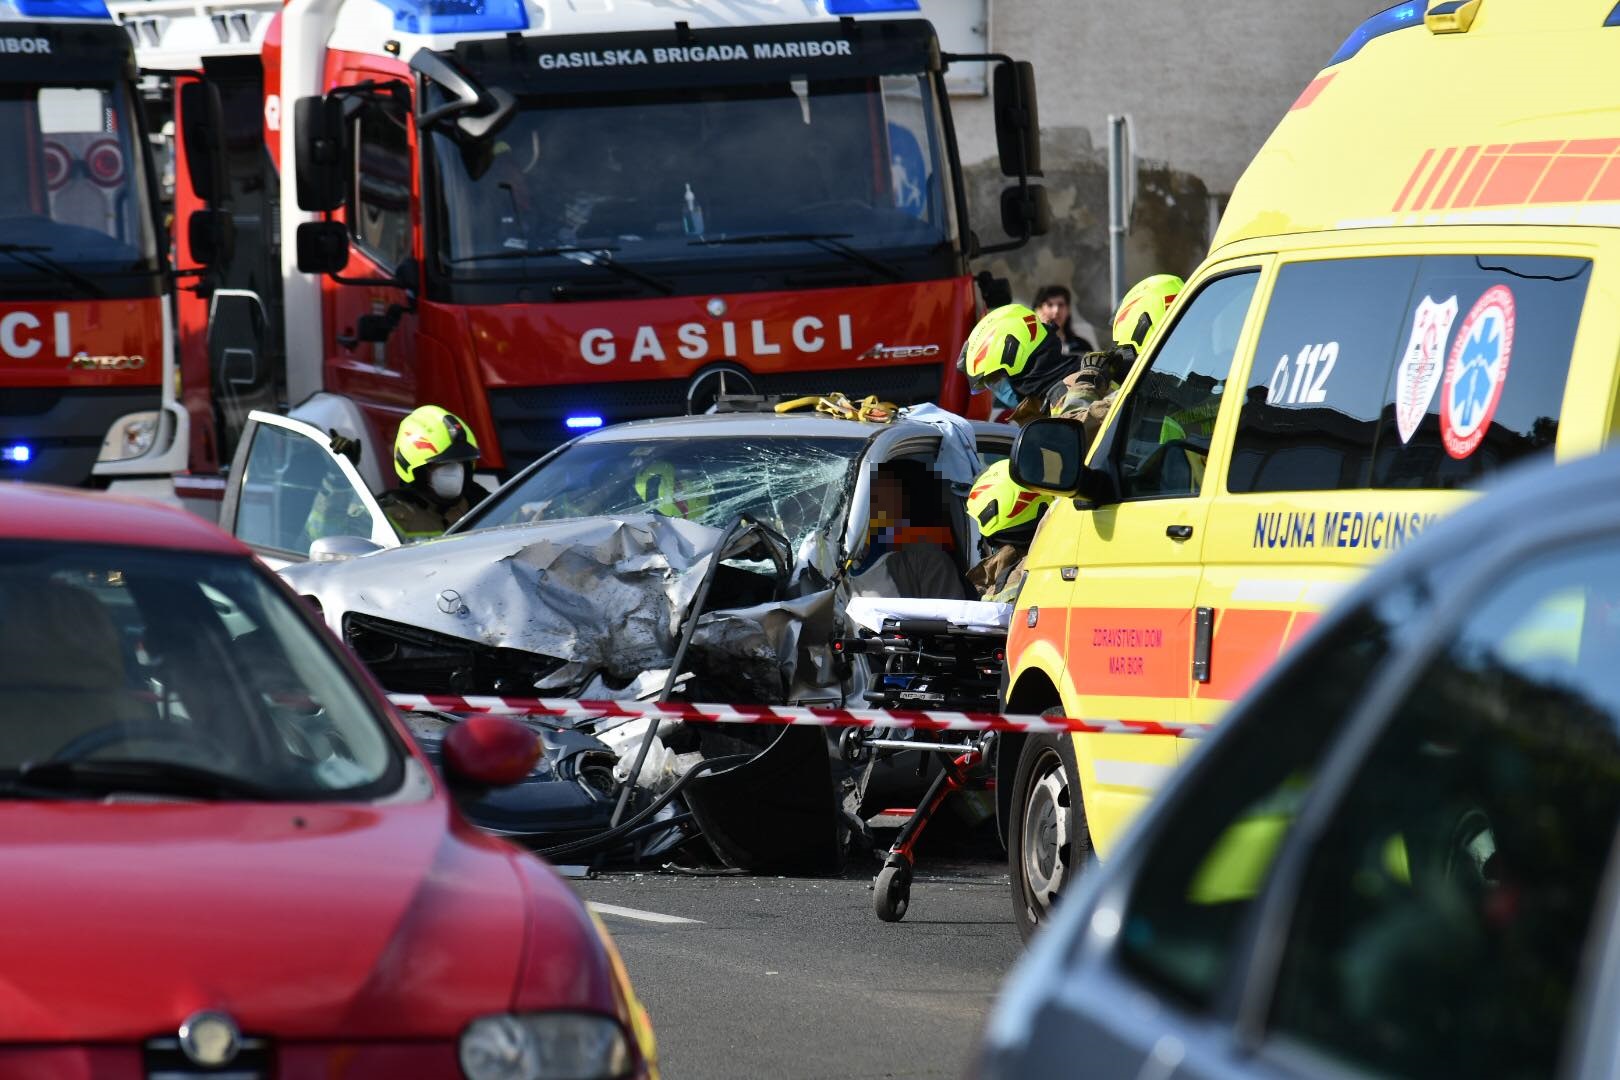 DNEVNA: Je fotografiranje prometnih nesreč kaznivo?